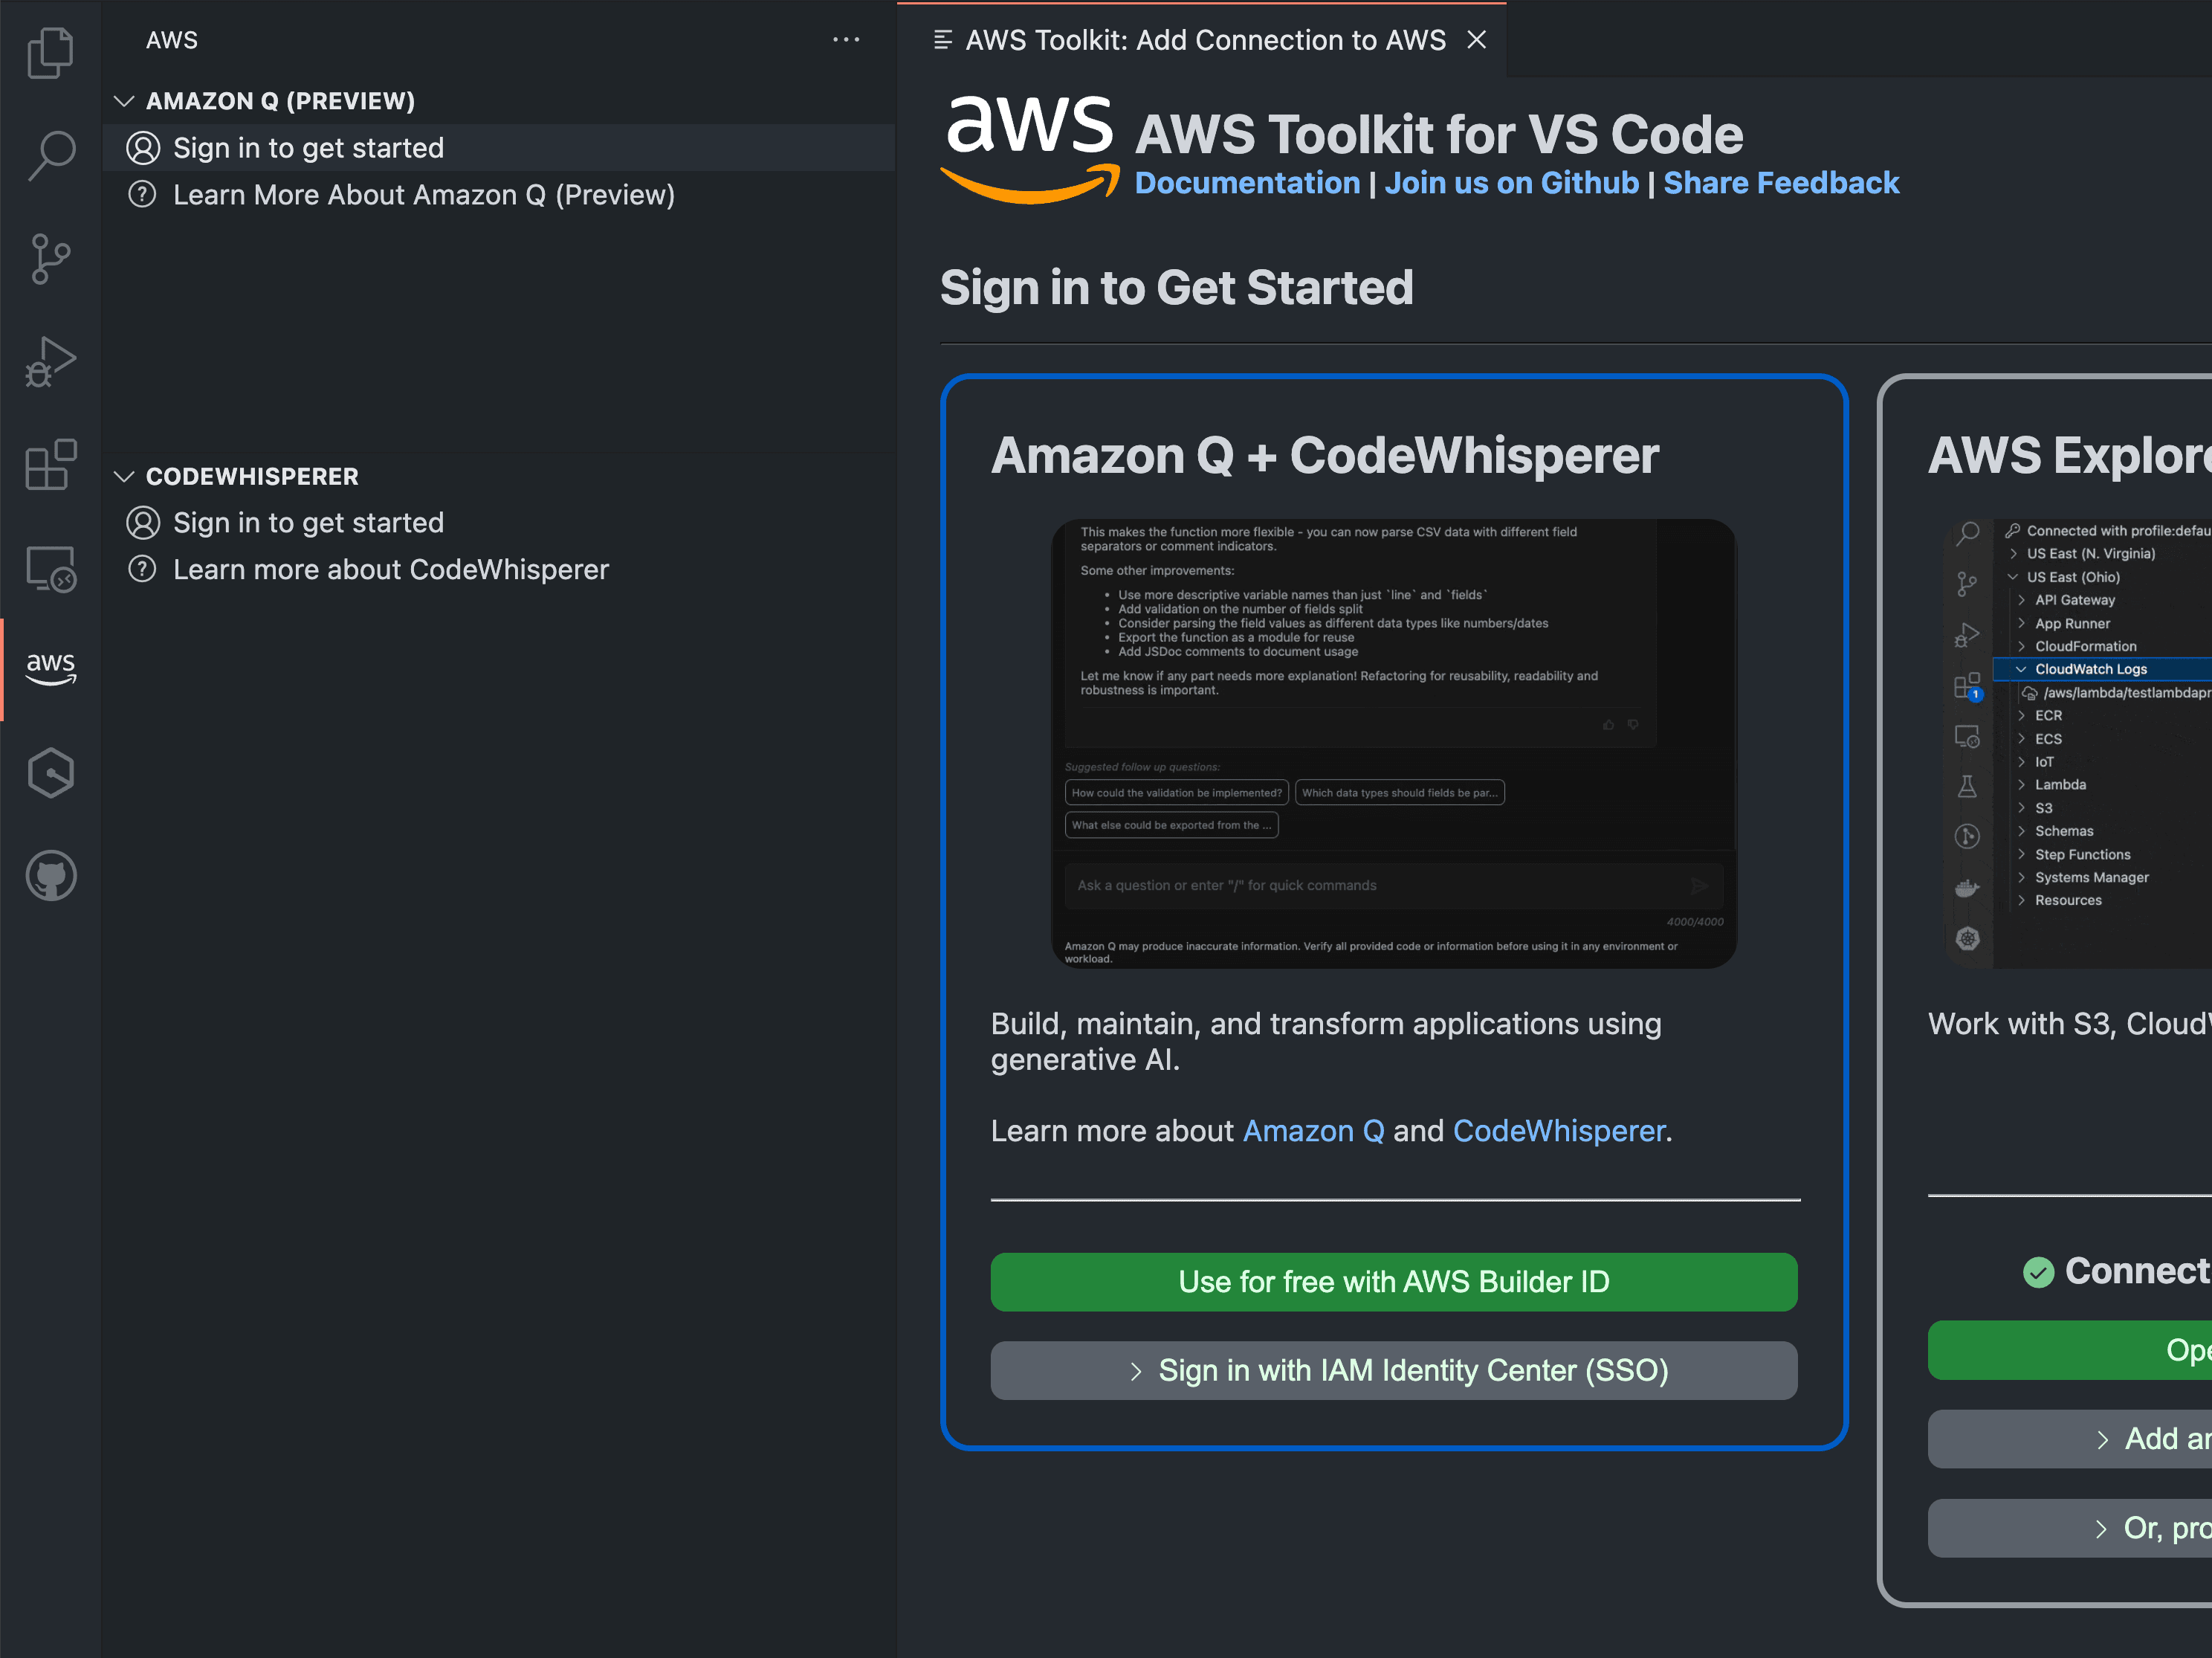 VSCode AWS Toolkit login screen